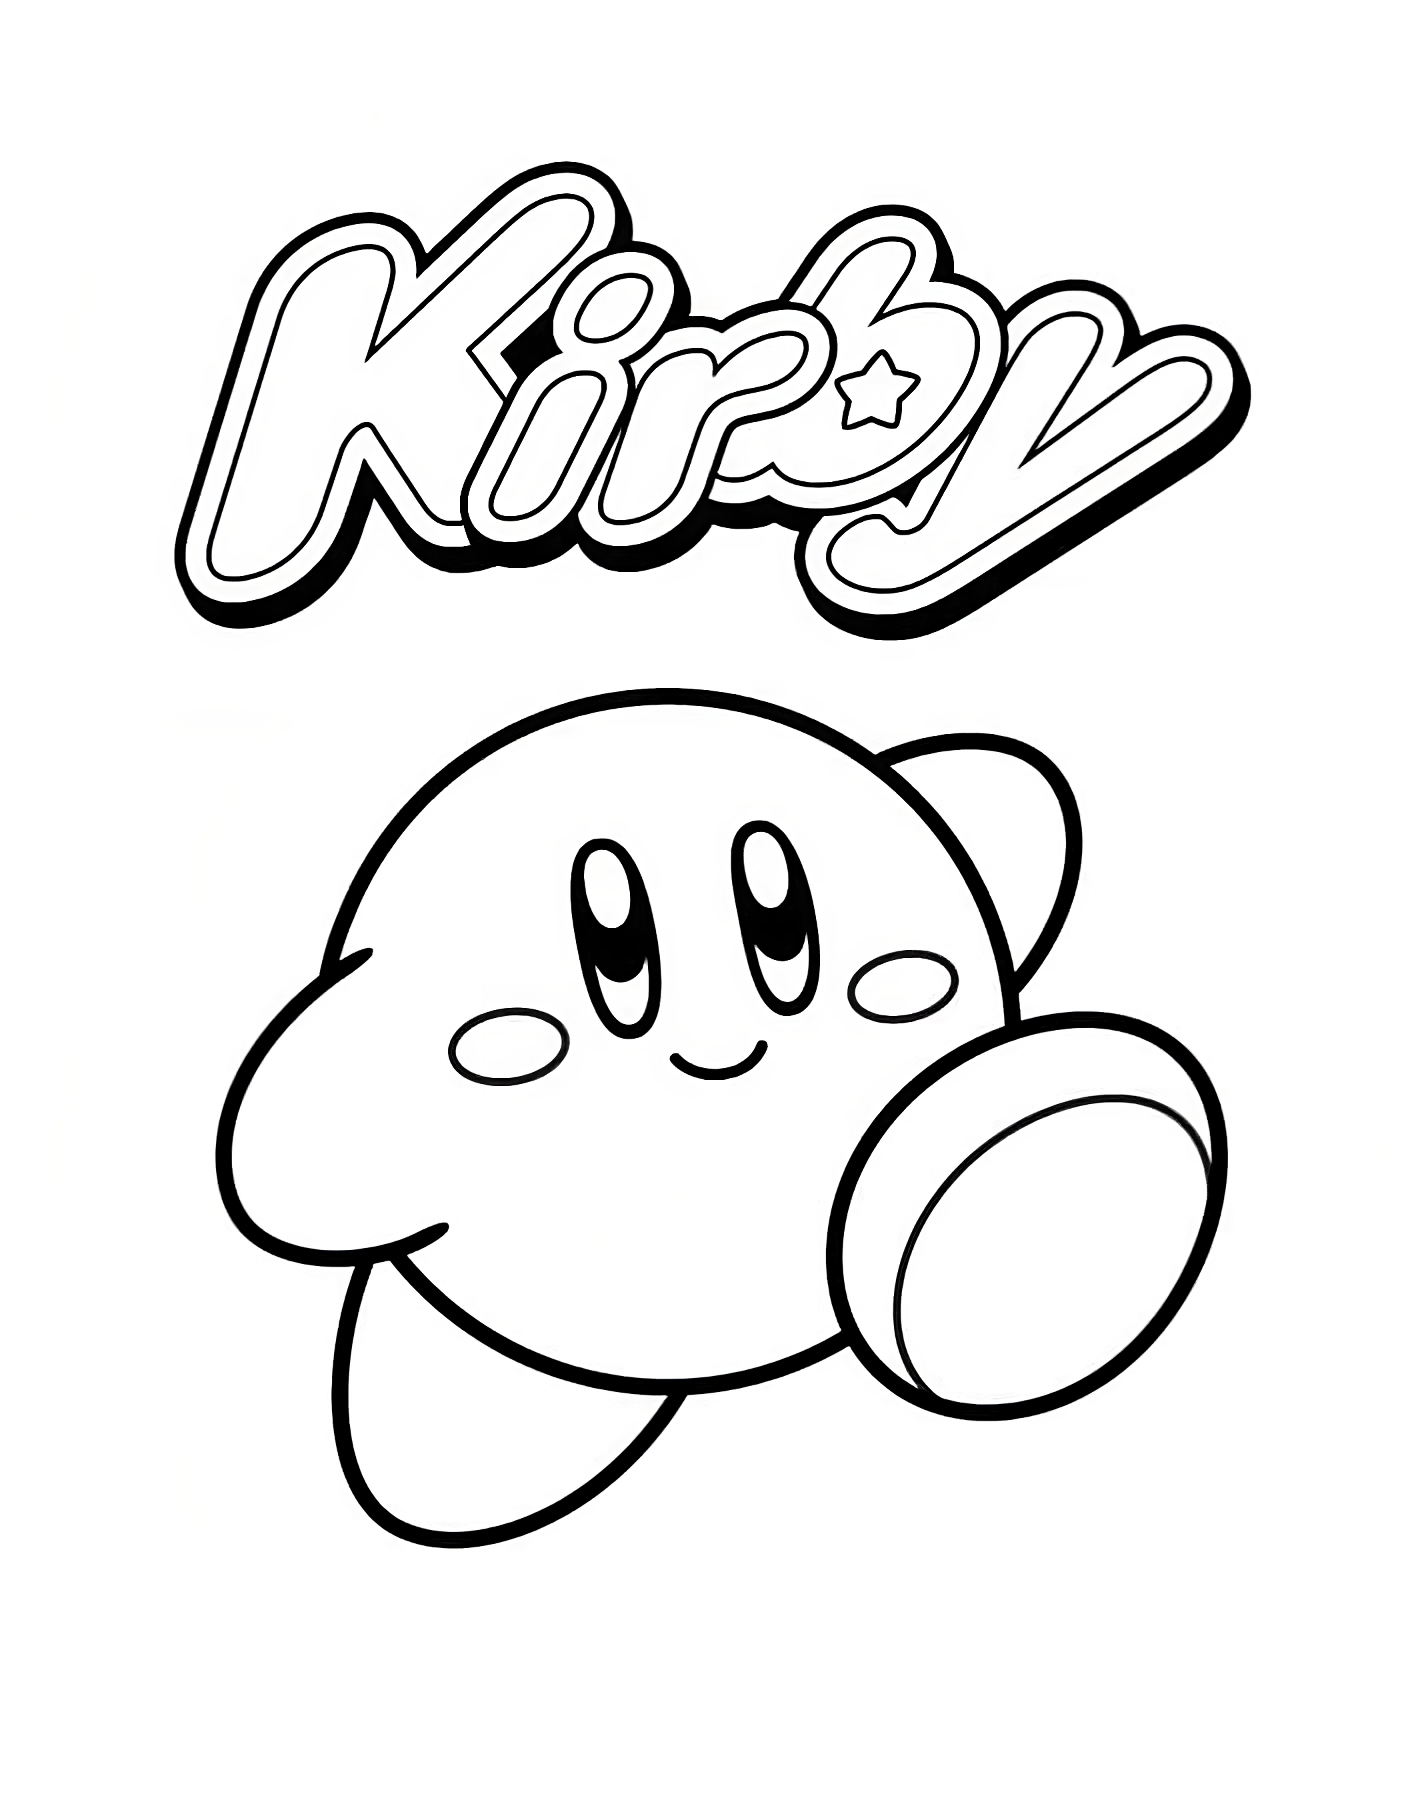 Kirby 11 van Kirby kleurplaat